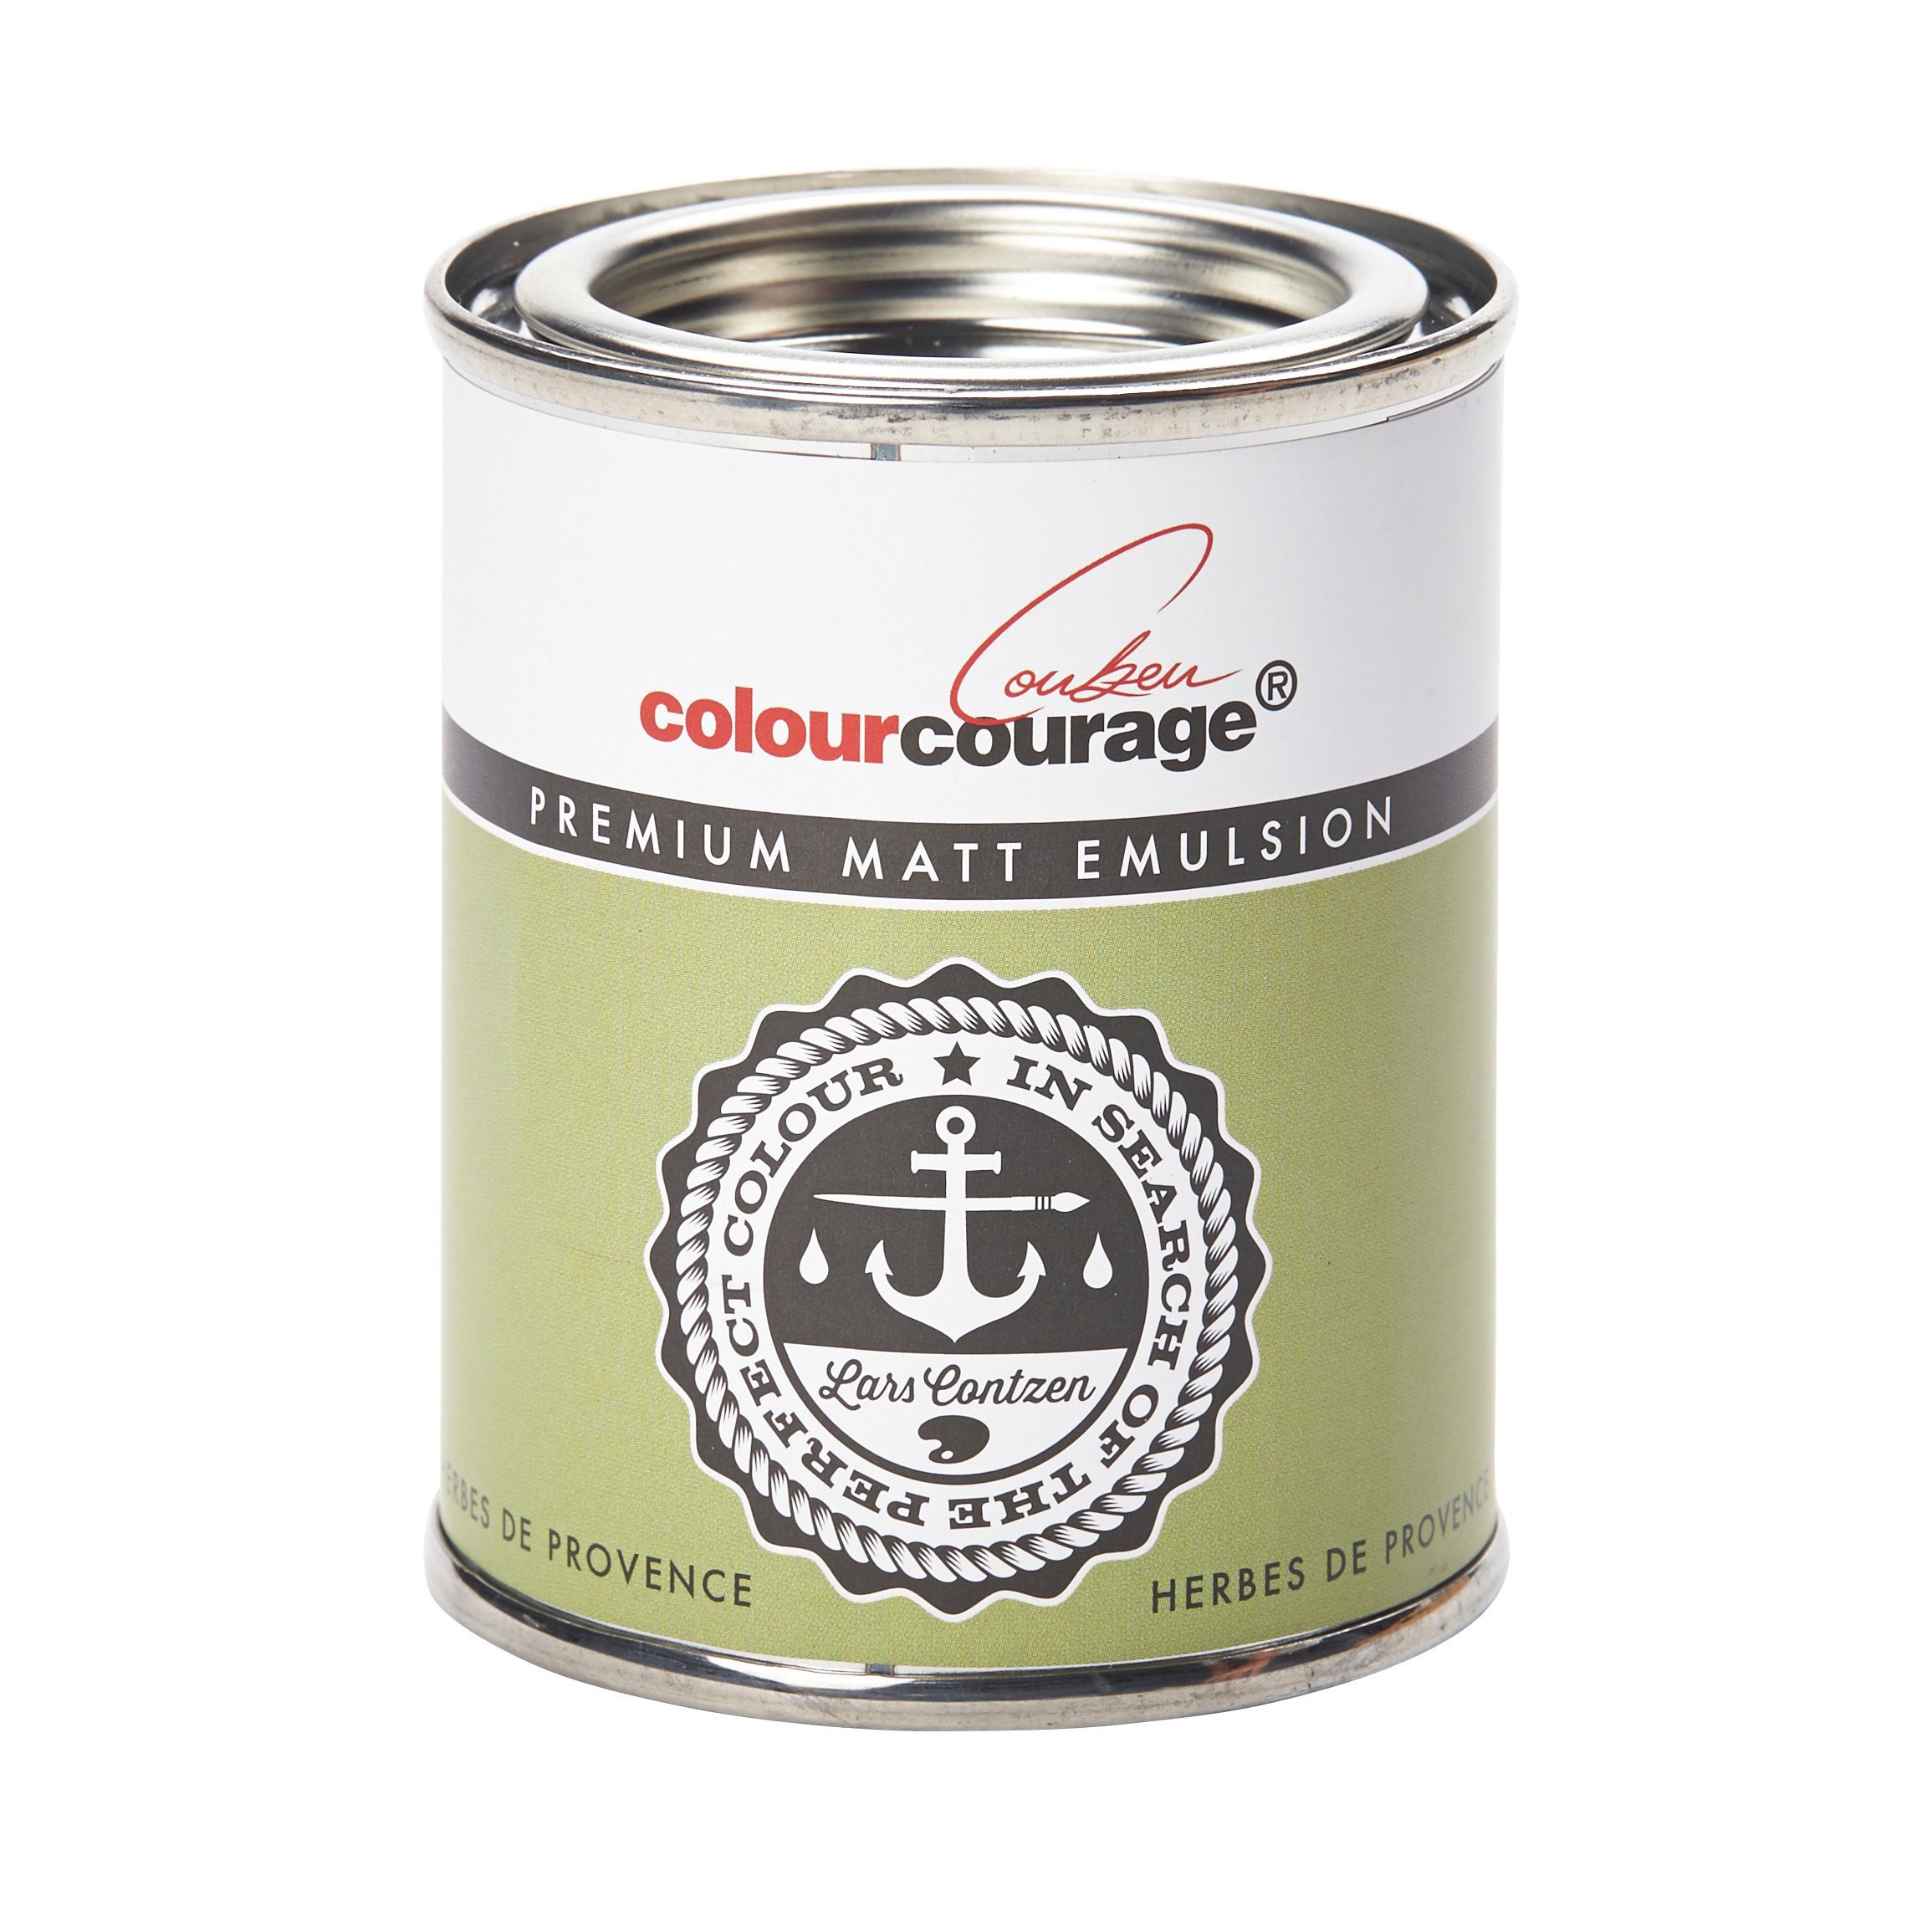 colourcourage Herbes de provence Matt Emulsion paint, 125ml